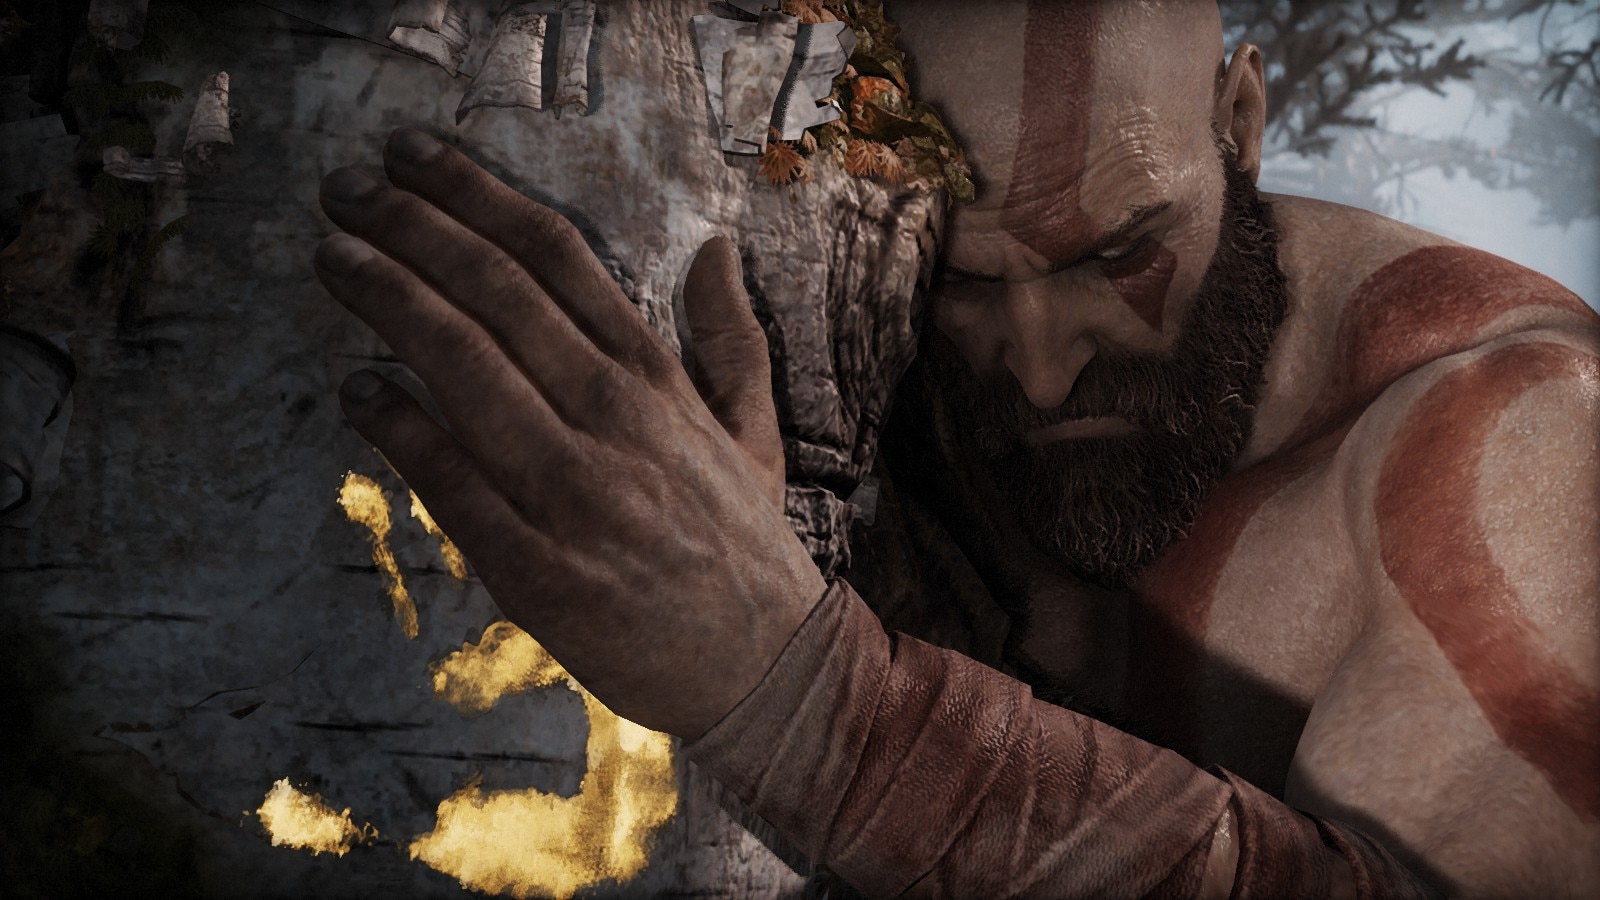 Relato: O God of War de 2018 transformou Kratos em um personagem